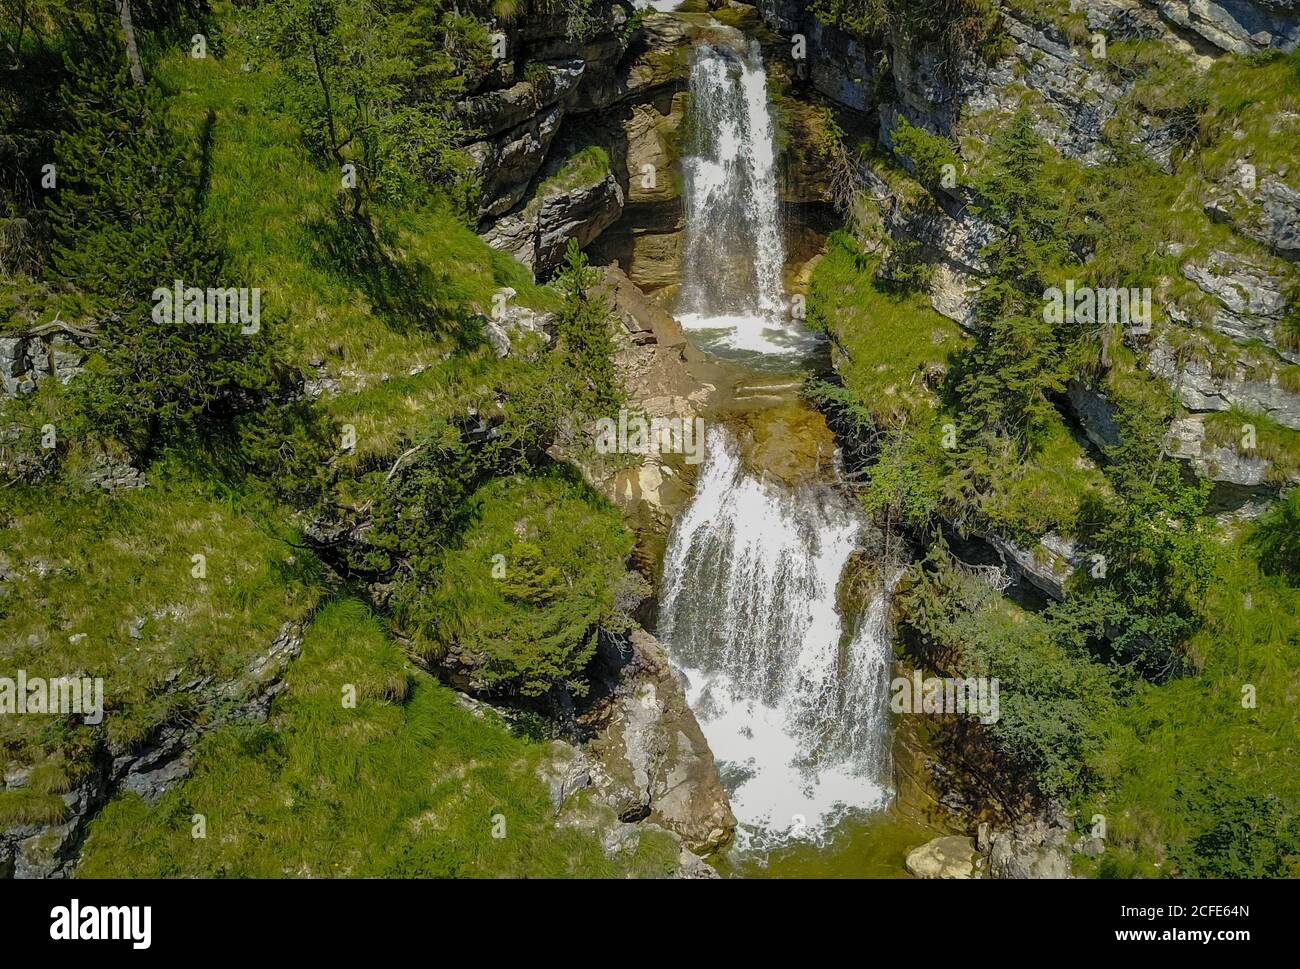 Kuhflüchtwasserfälle im Sommer, Kuhflucht, Wasserfall, Farchant, Garmisch-Partenkirchen, Oberbayern, Bayern, Süddeutschland, Deutschland Stockfoto